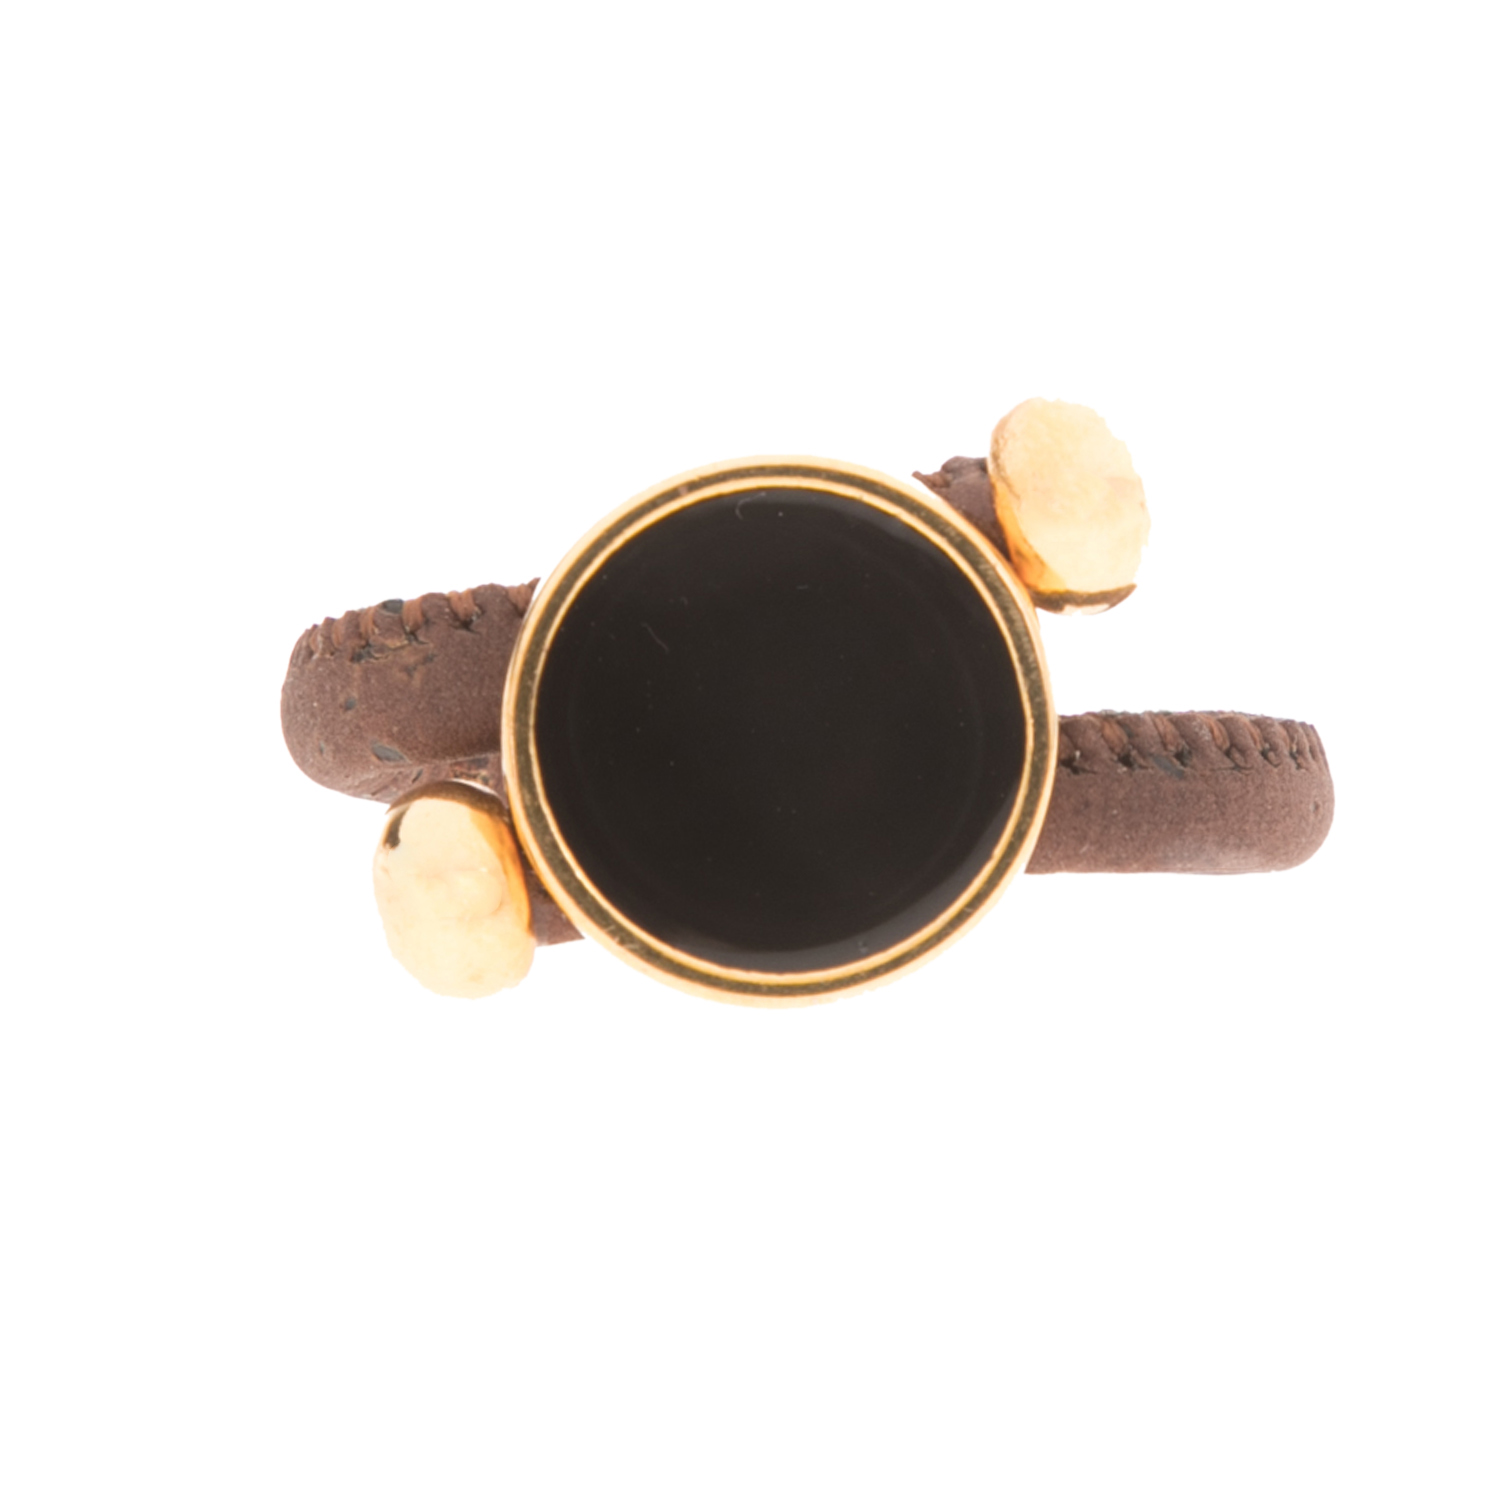 Γυναικεία/Αξεσουάρ/Κοσμήματα/Δαχτυλίδια APOXYLO - Γυναικείο δαχτυλίδι APOXYLO καφέ